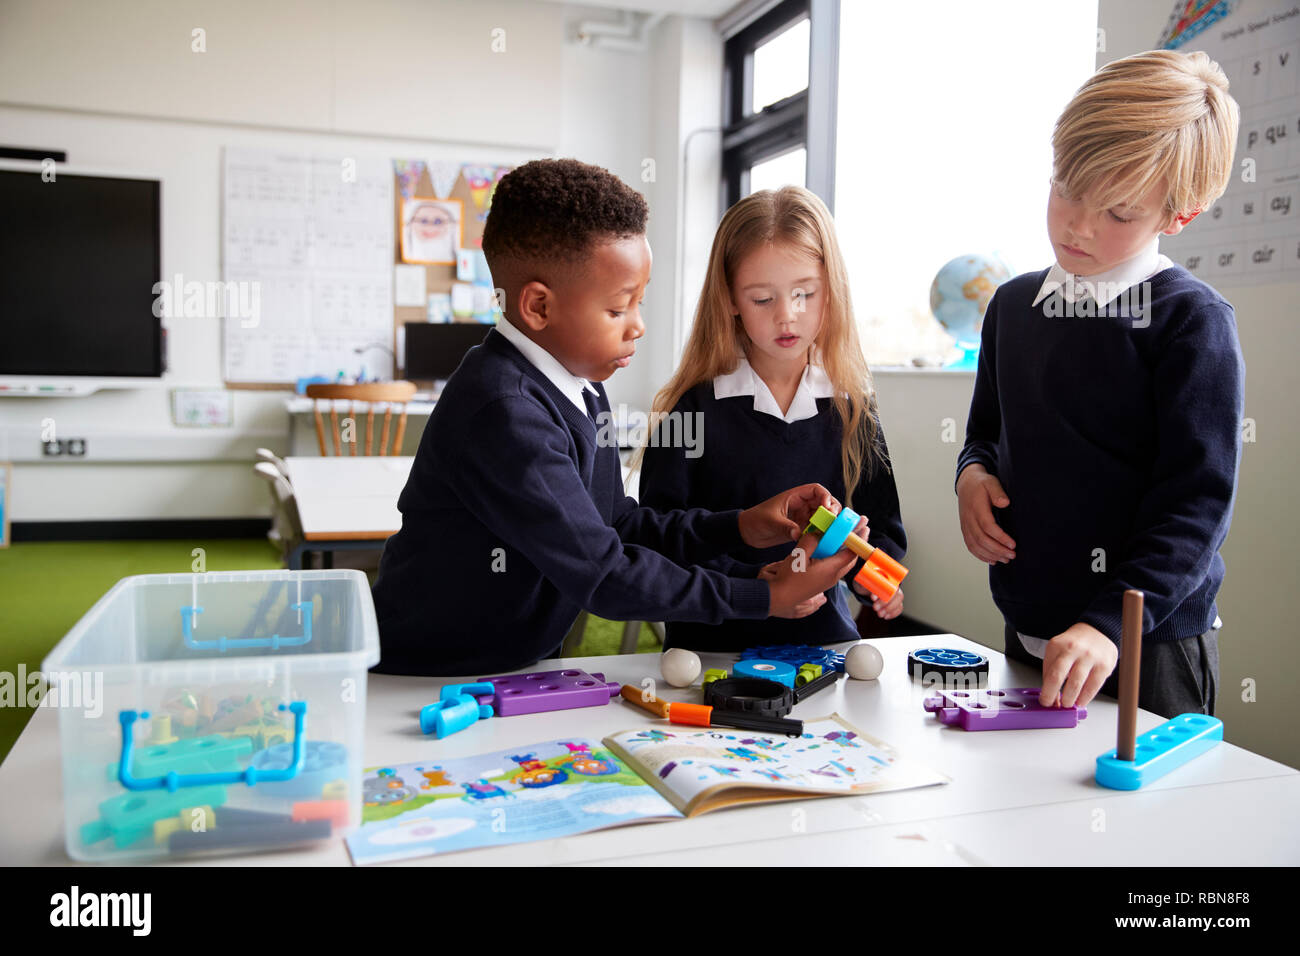 Ein Mädchen und zwei Jungen stehen an einem Tisch in einer Grundschule Klassenzimmer gemeinsam mit Spielzeug Bau Blöcke, in der Nähe Stockfoto